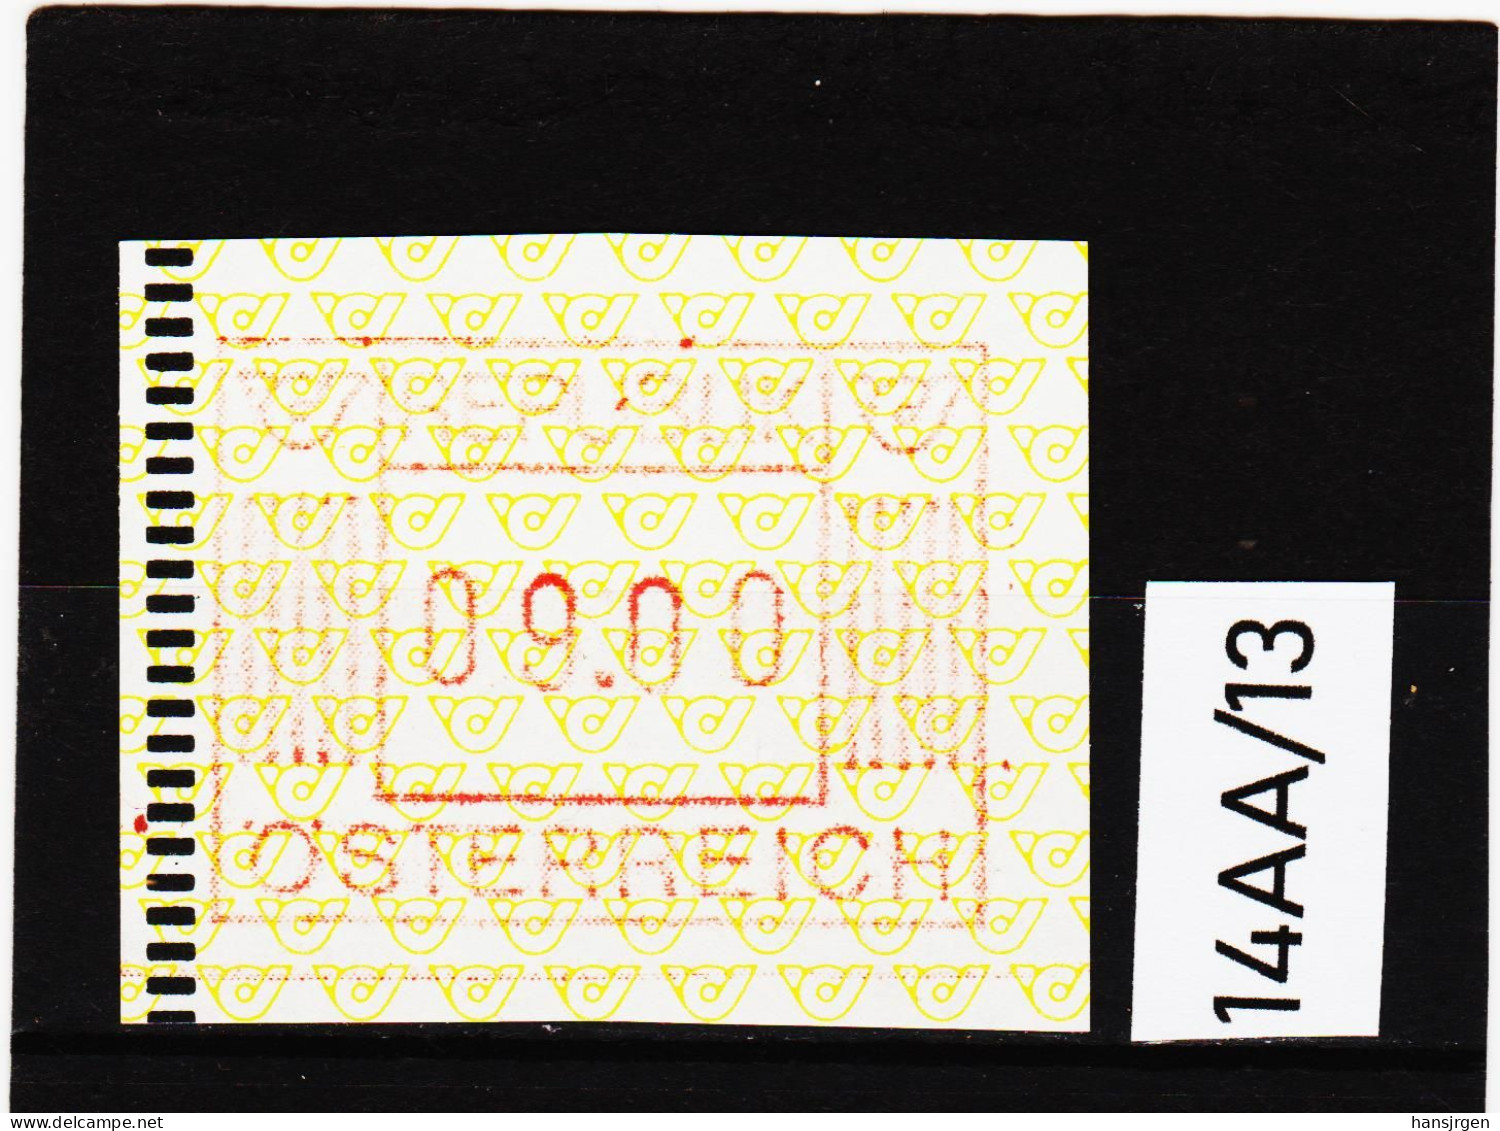 14AA/13  ÖSTERREICH 1983 AUTOMATENMARKEN 1. AUSGABE  9,00 SCHILLING   ** Postfrisch - Machine Labels [ATM]